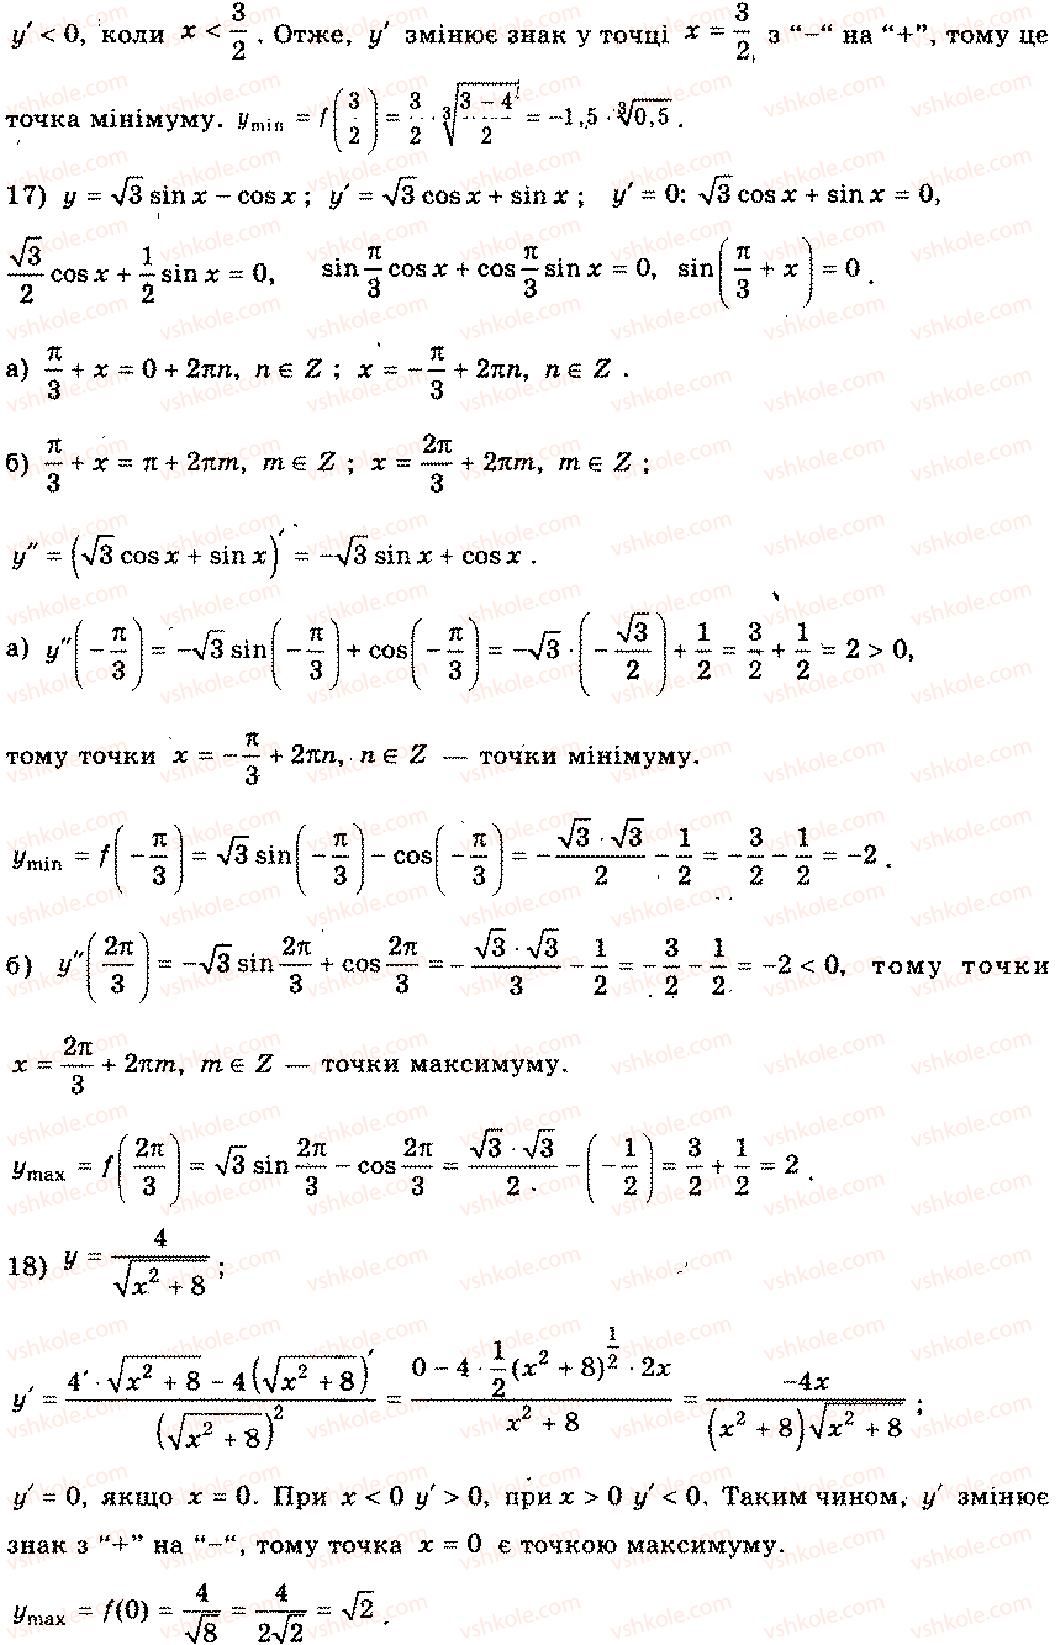 11-algebra-mi-shkil-zi-slepkan-os-dubinchuk-2006--rozdil-8-zastosuvannya-pohidnoyi-2-rnd6851.jpg